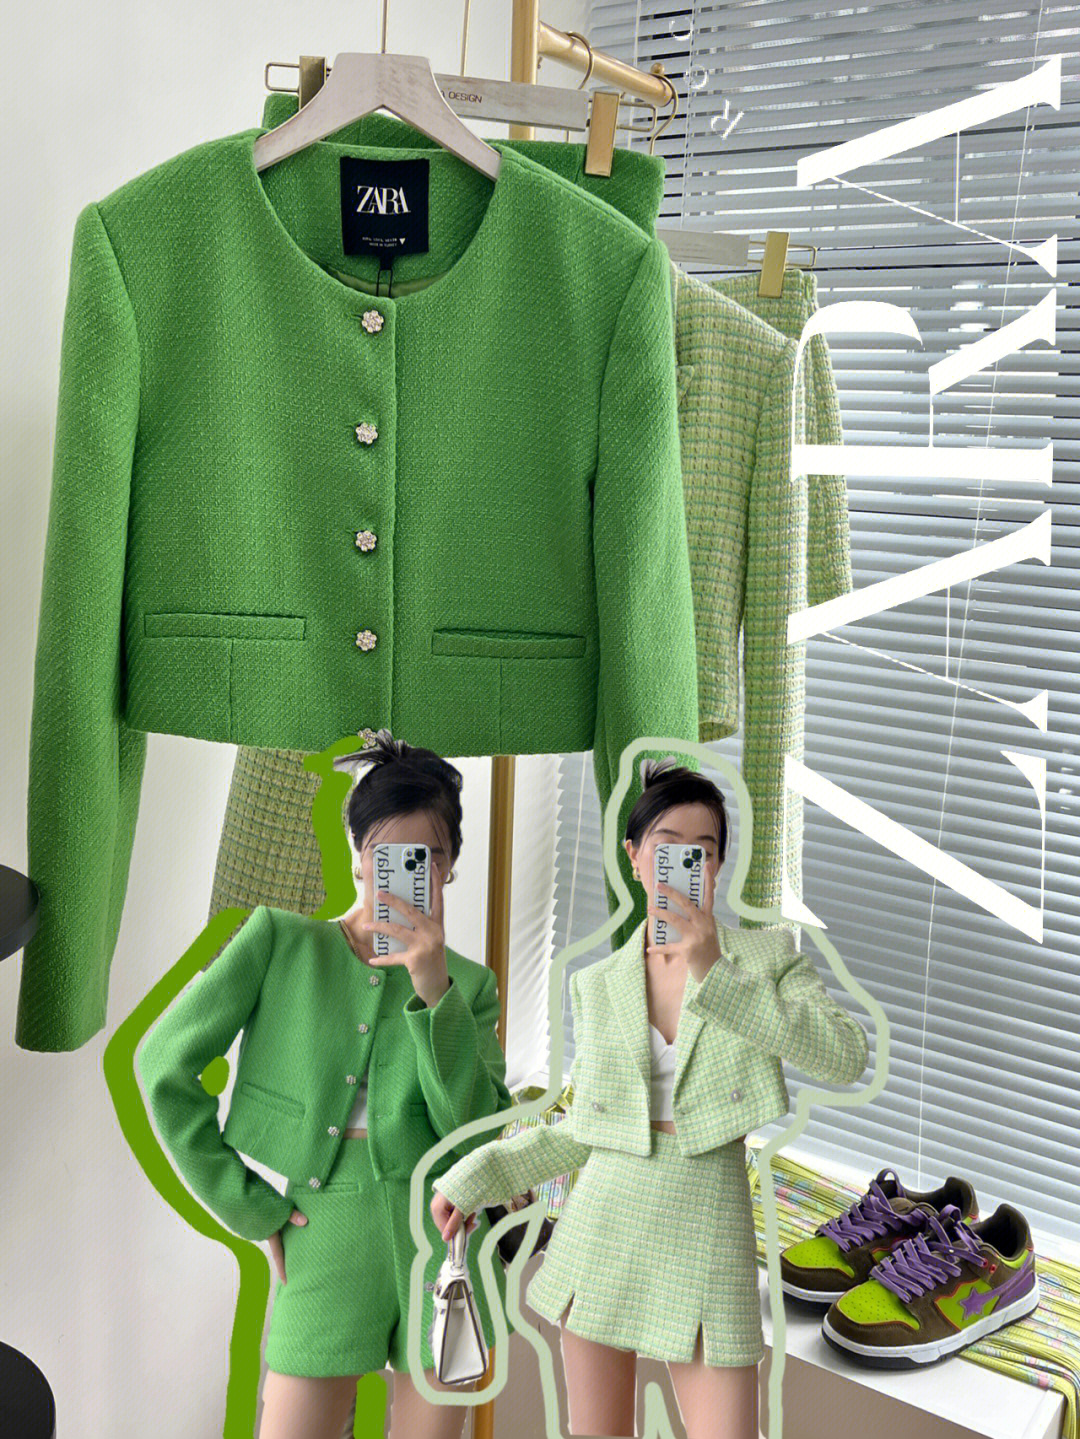 绿色,平时穿s的我只买到了l,为爱伸缩一下也能穿～分开搭配也很好看!